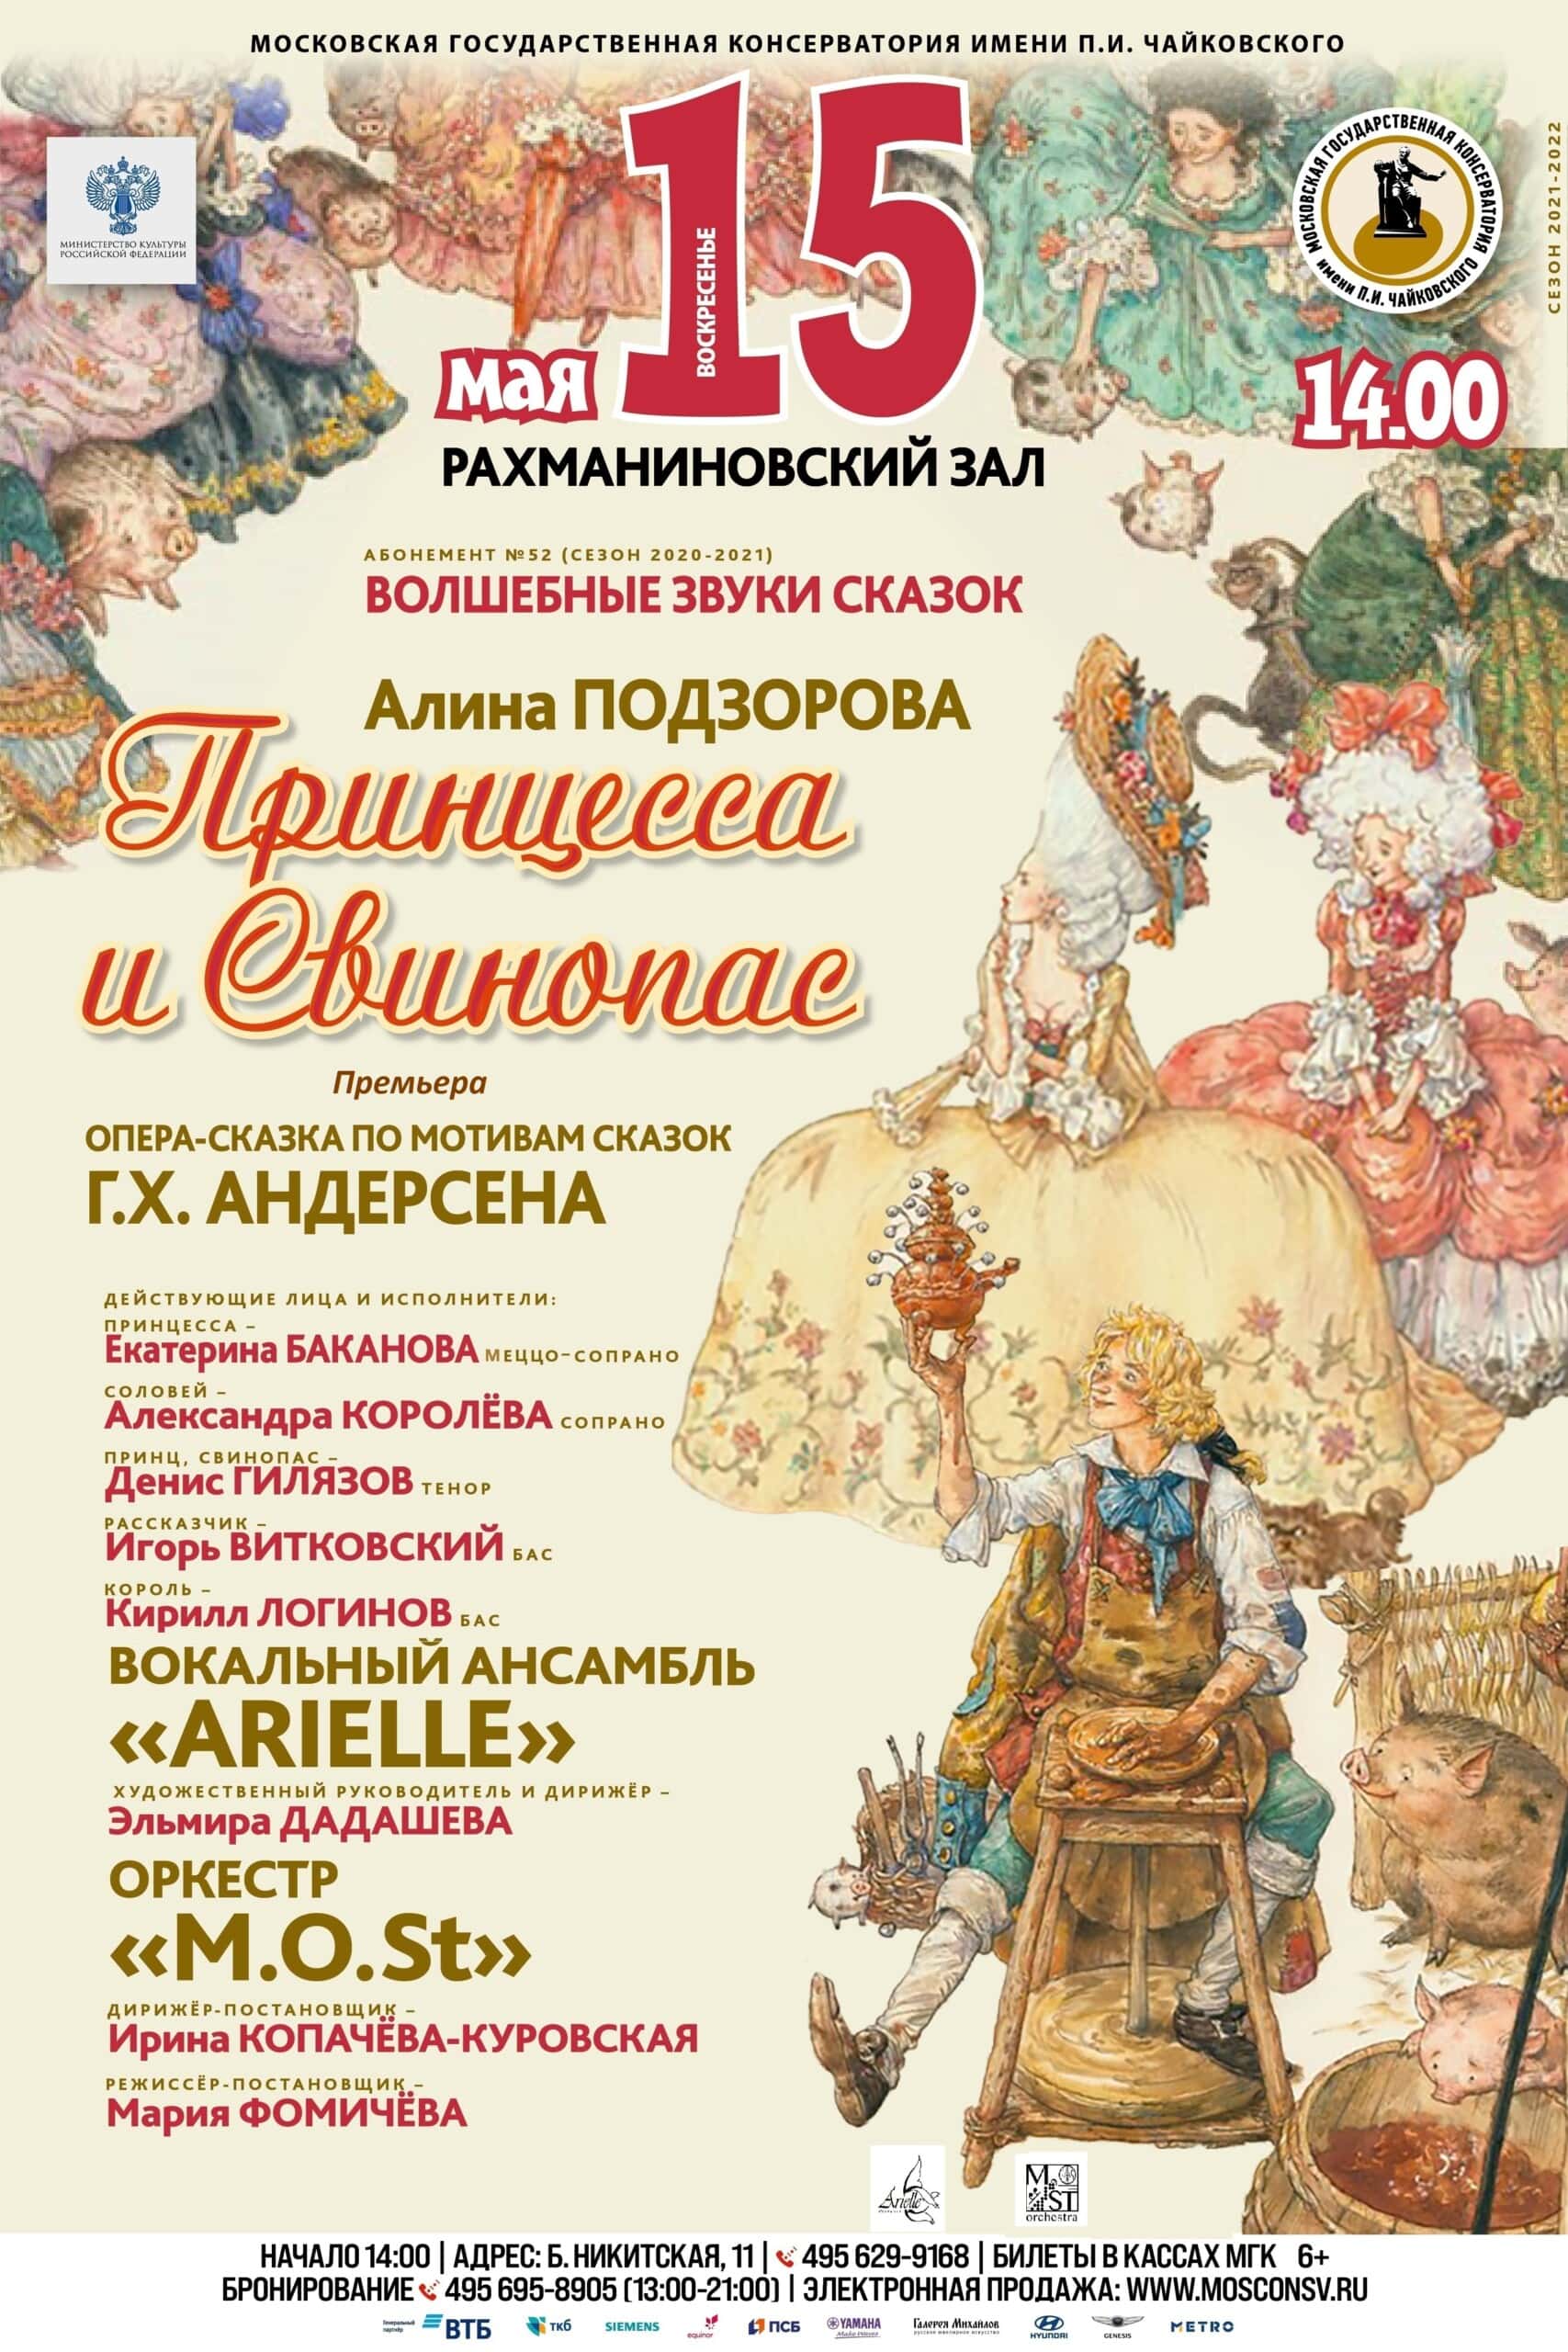 Опера "Принцесса и свинопас" прозвучит в Рахманиновском зале Московской консерватории